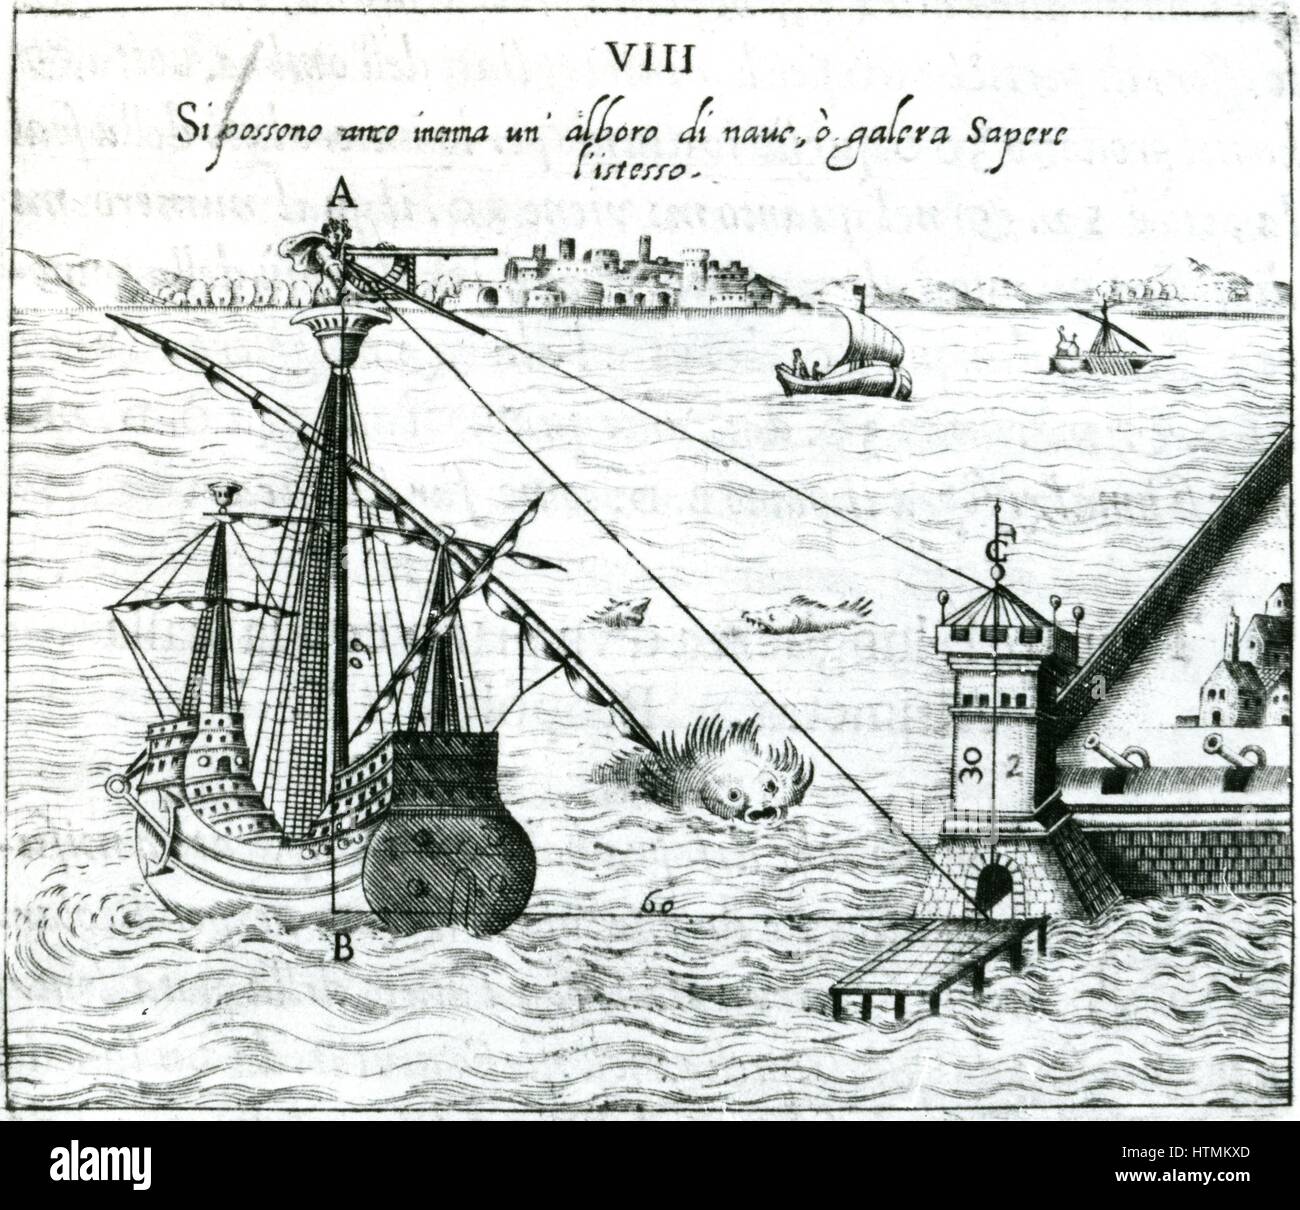 La misurazione della distanza da Nave a riva, utilizzando un quadrante contrassegnato con shadow-scale. Da Ottavius Fabri 'L'usa della squadra mobile', Venezia, 1598. Incisione Foto Stock